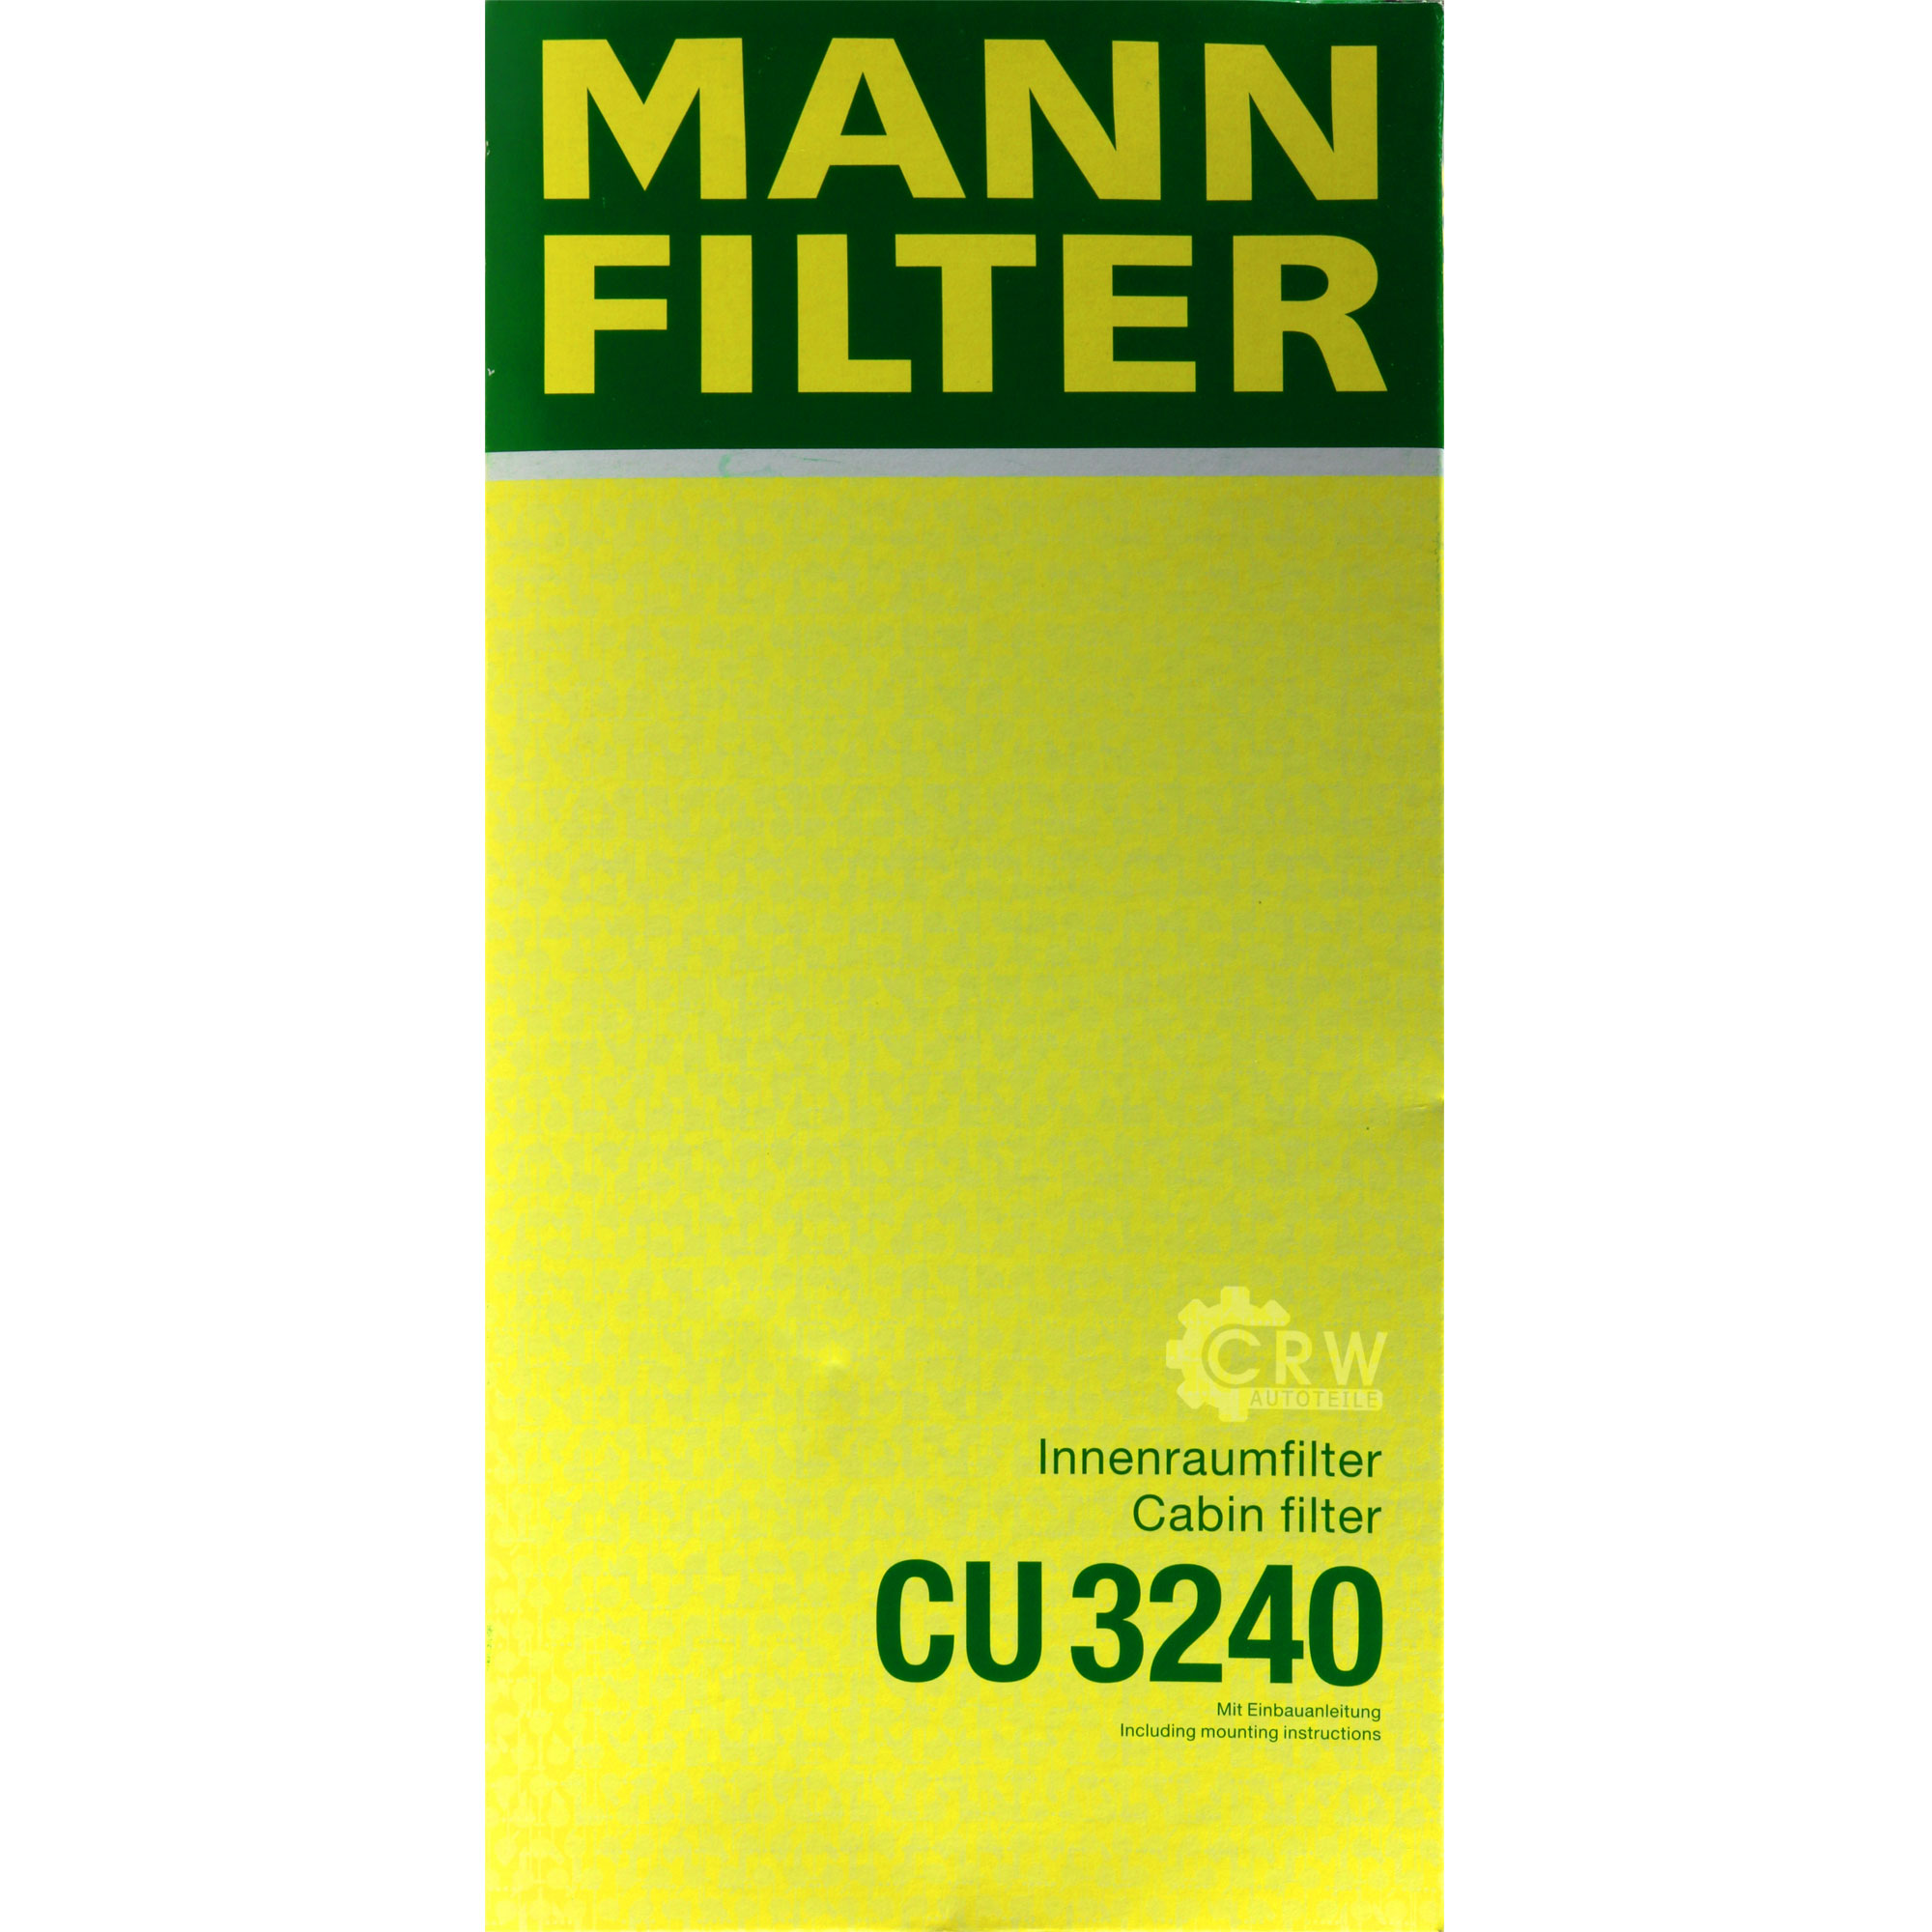 MANN-FILTER Innenraumfilter Pollenfilter CU 3240